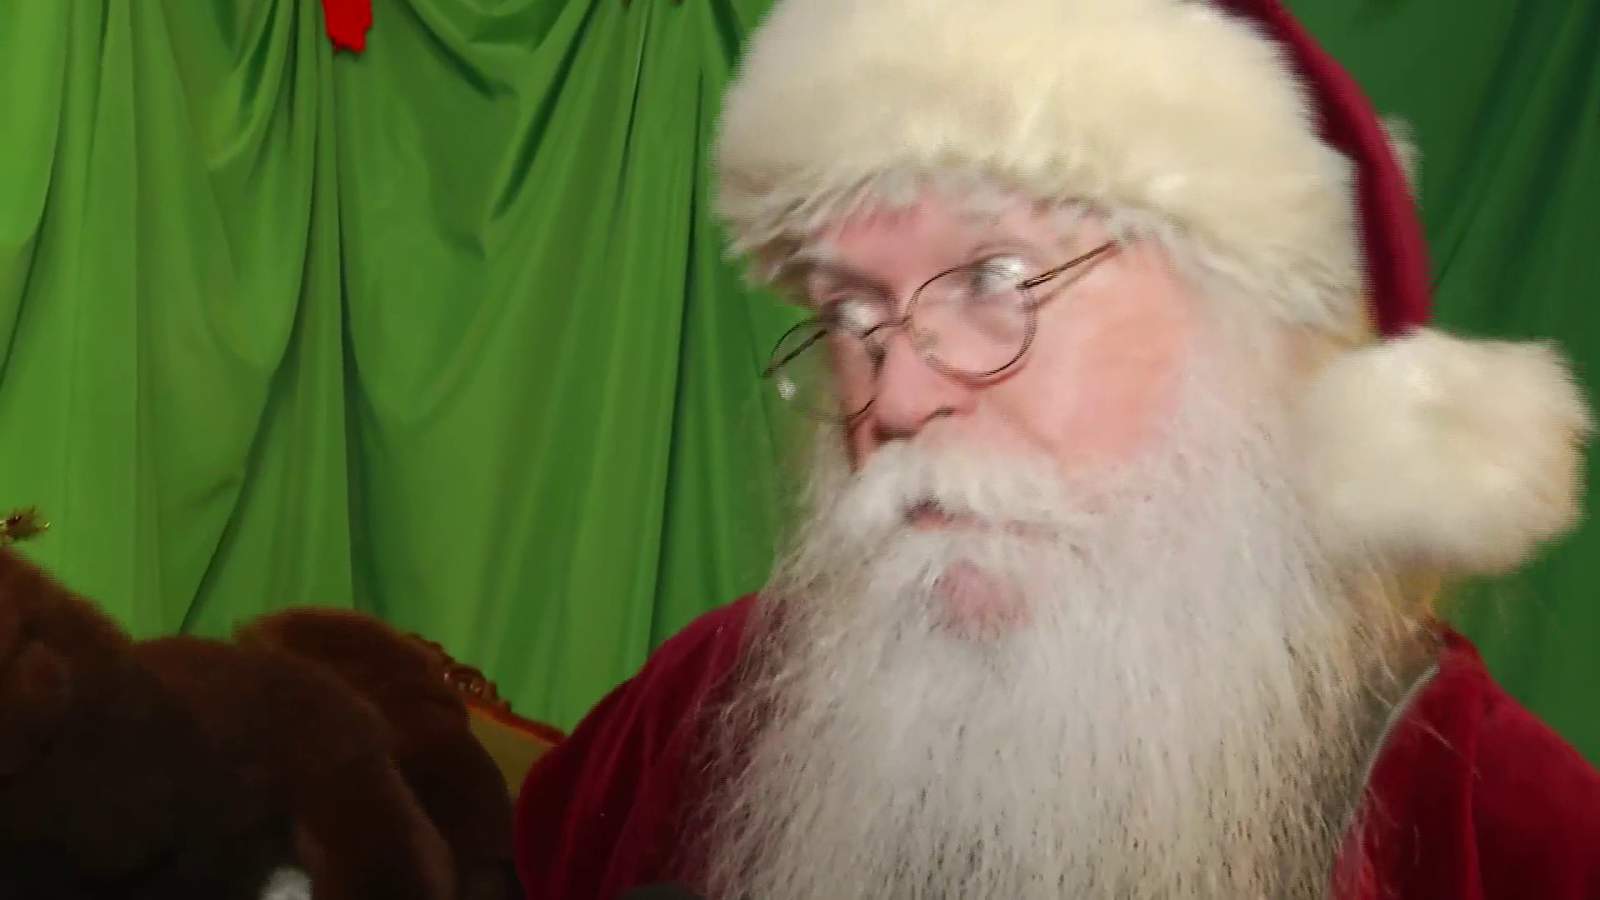 Santa Claus brings holiday cheer to Illuminights